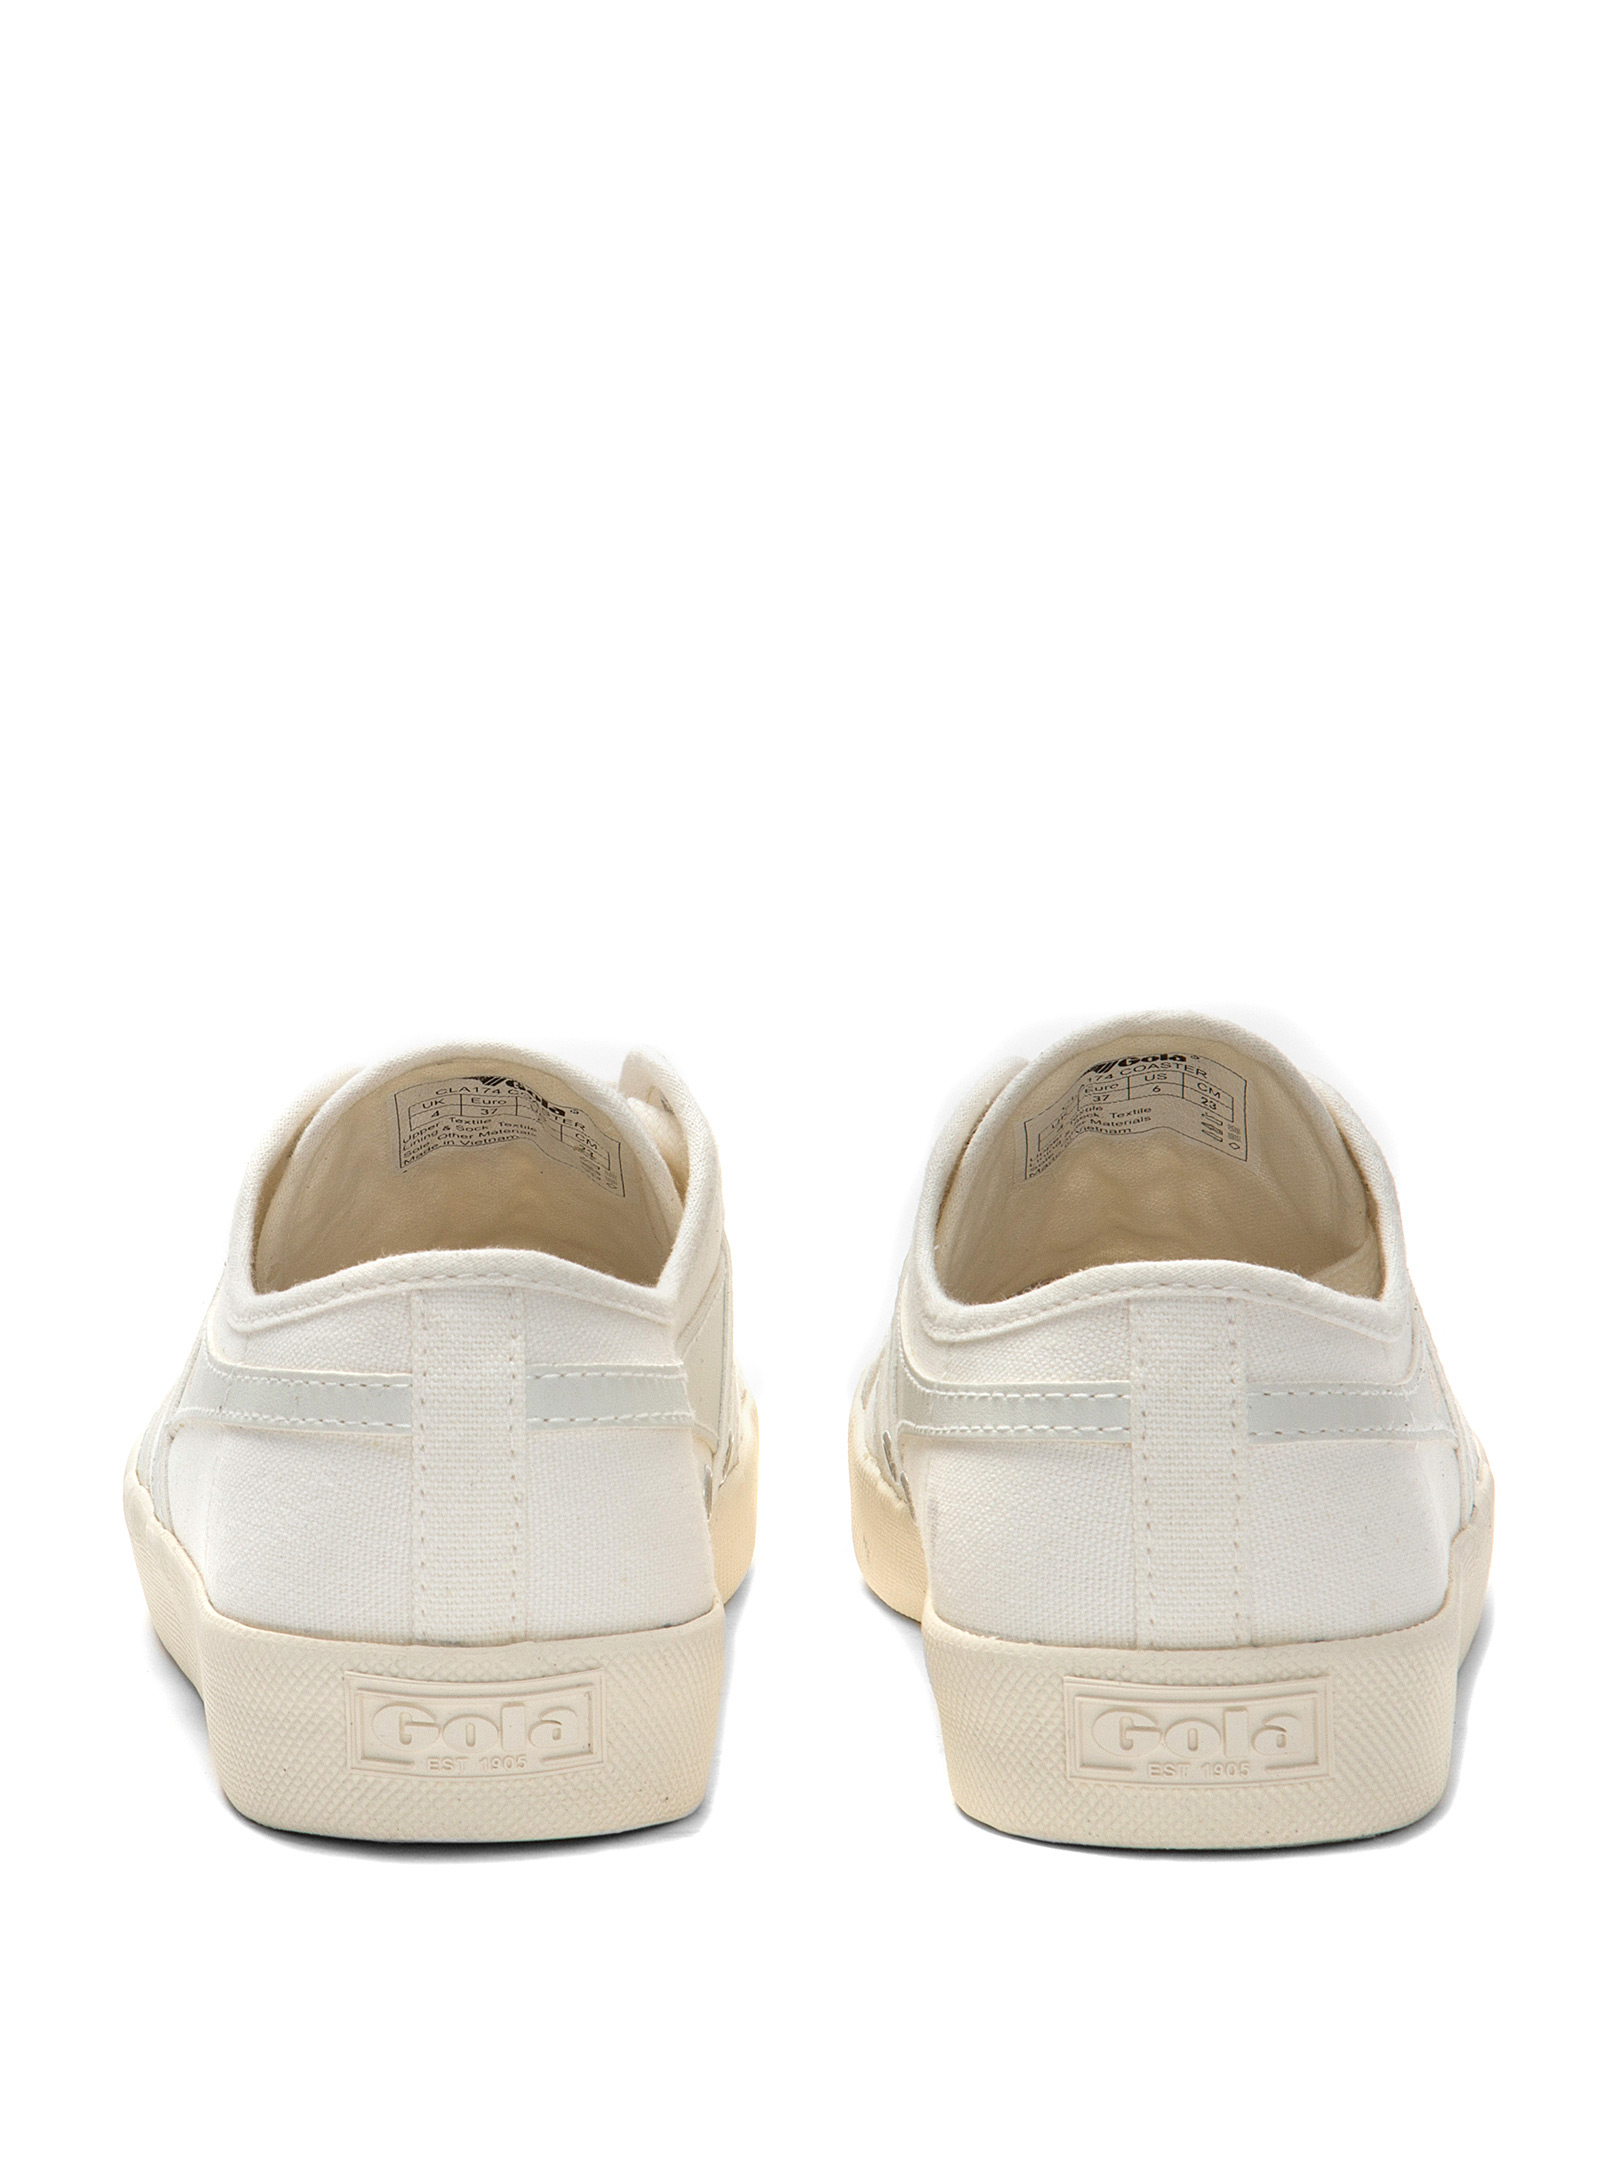 Gola - Chaussures Le Sneaker rétro Coaster blanc et doré Femme